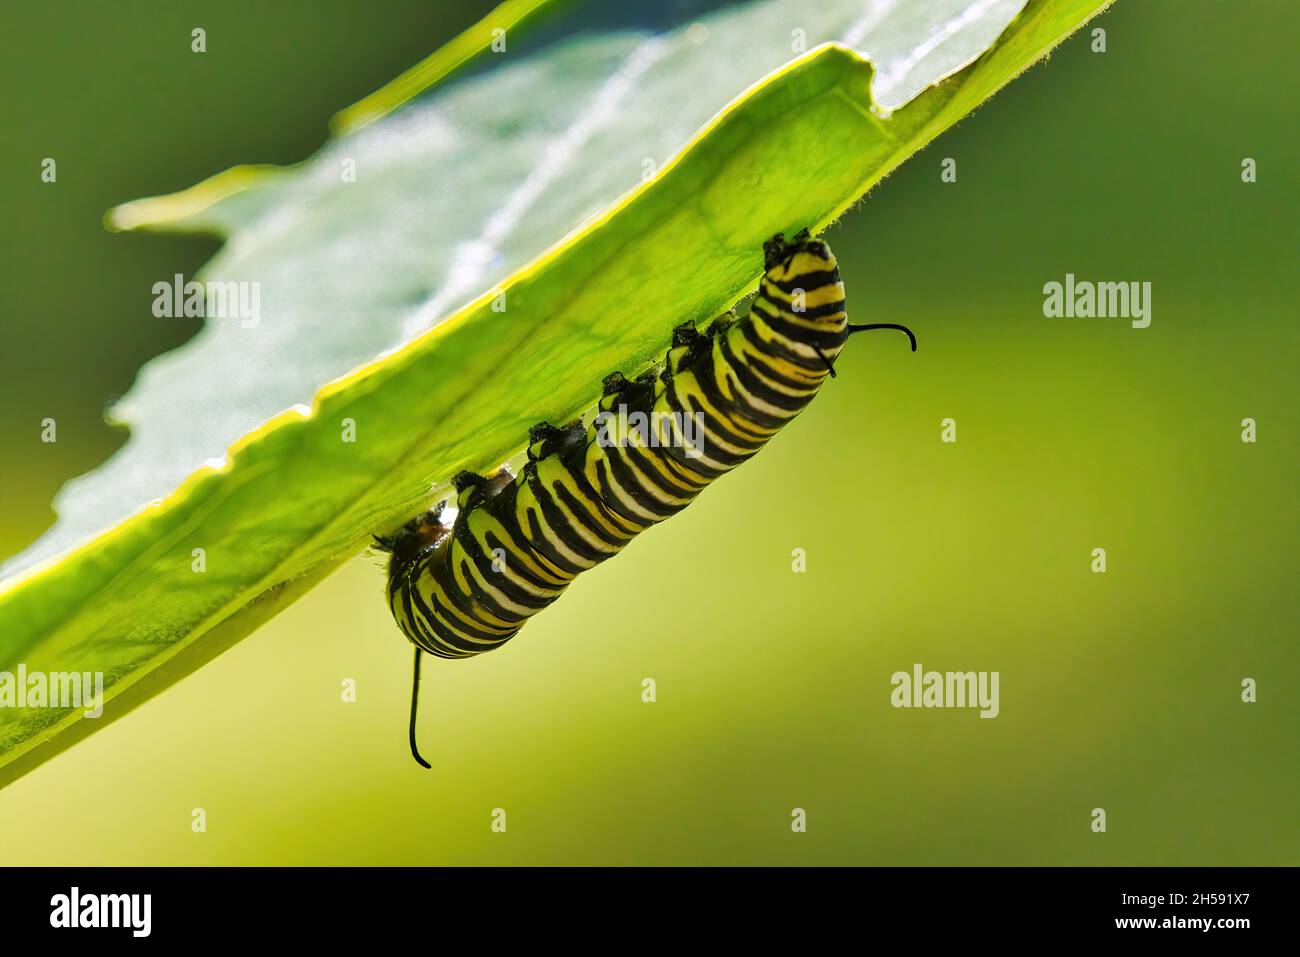 Primo piano di un coloratissimo monarca a strisce bianche, nere e gialle che mangia alghe. Foto Stock